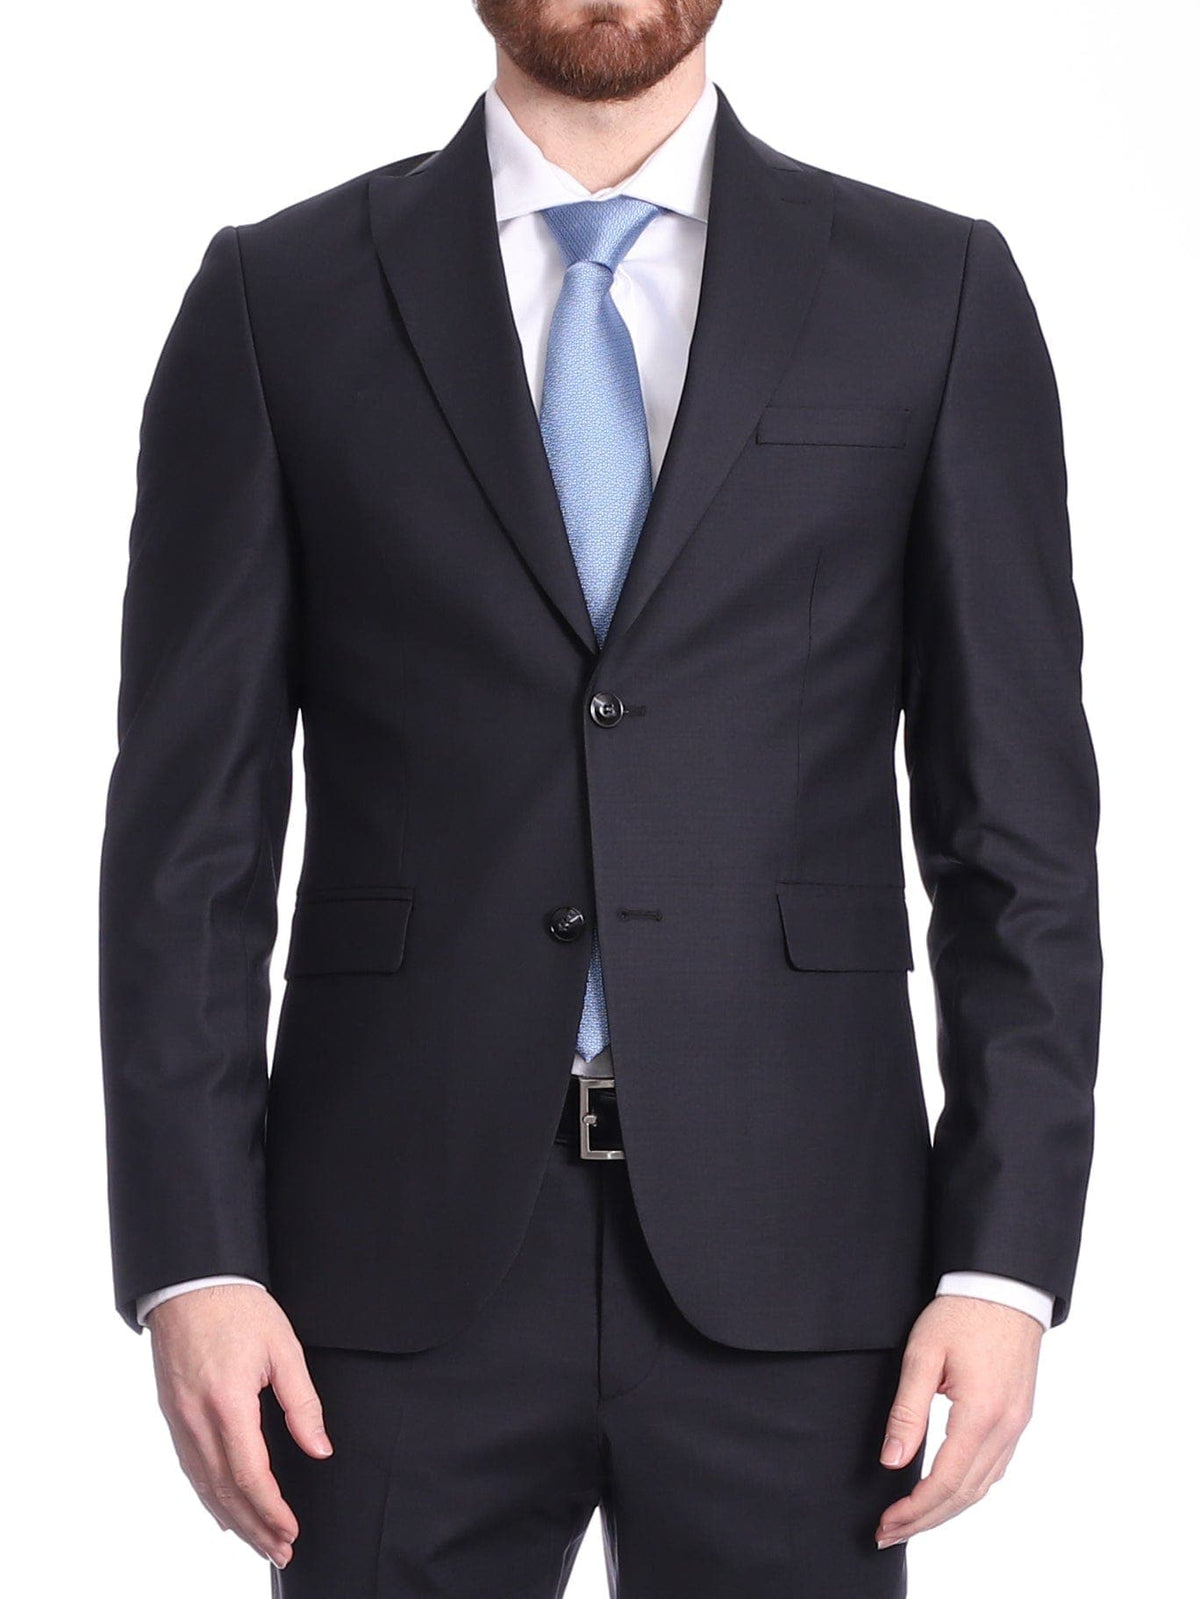 Carducci SUITS Carducci Mens Solid Black Textured Wool Blend Slim Fit Suit With Peak Lapels